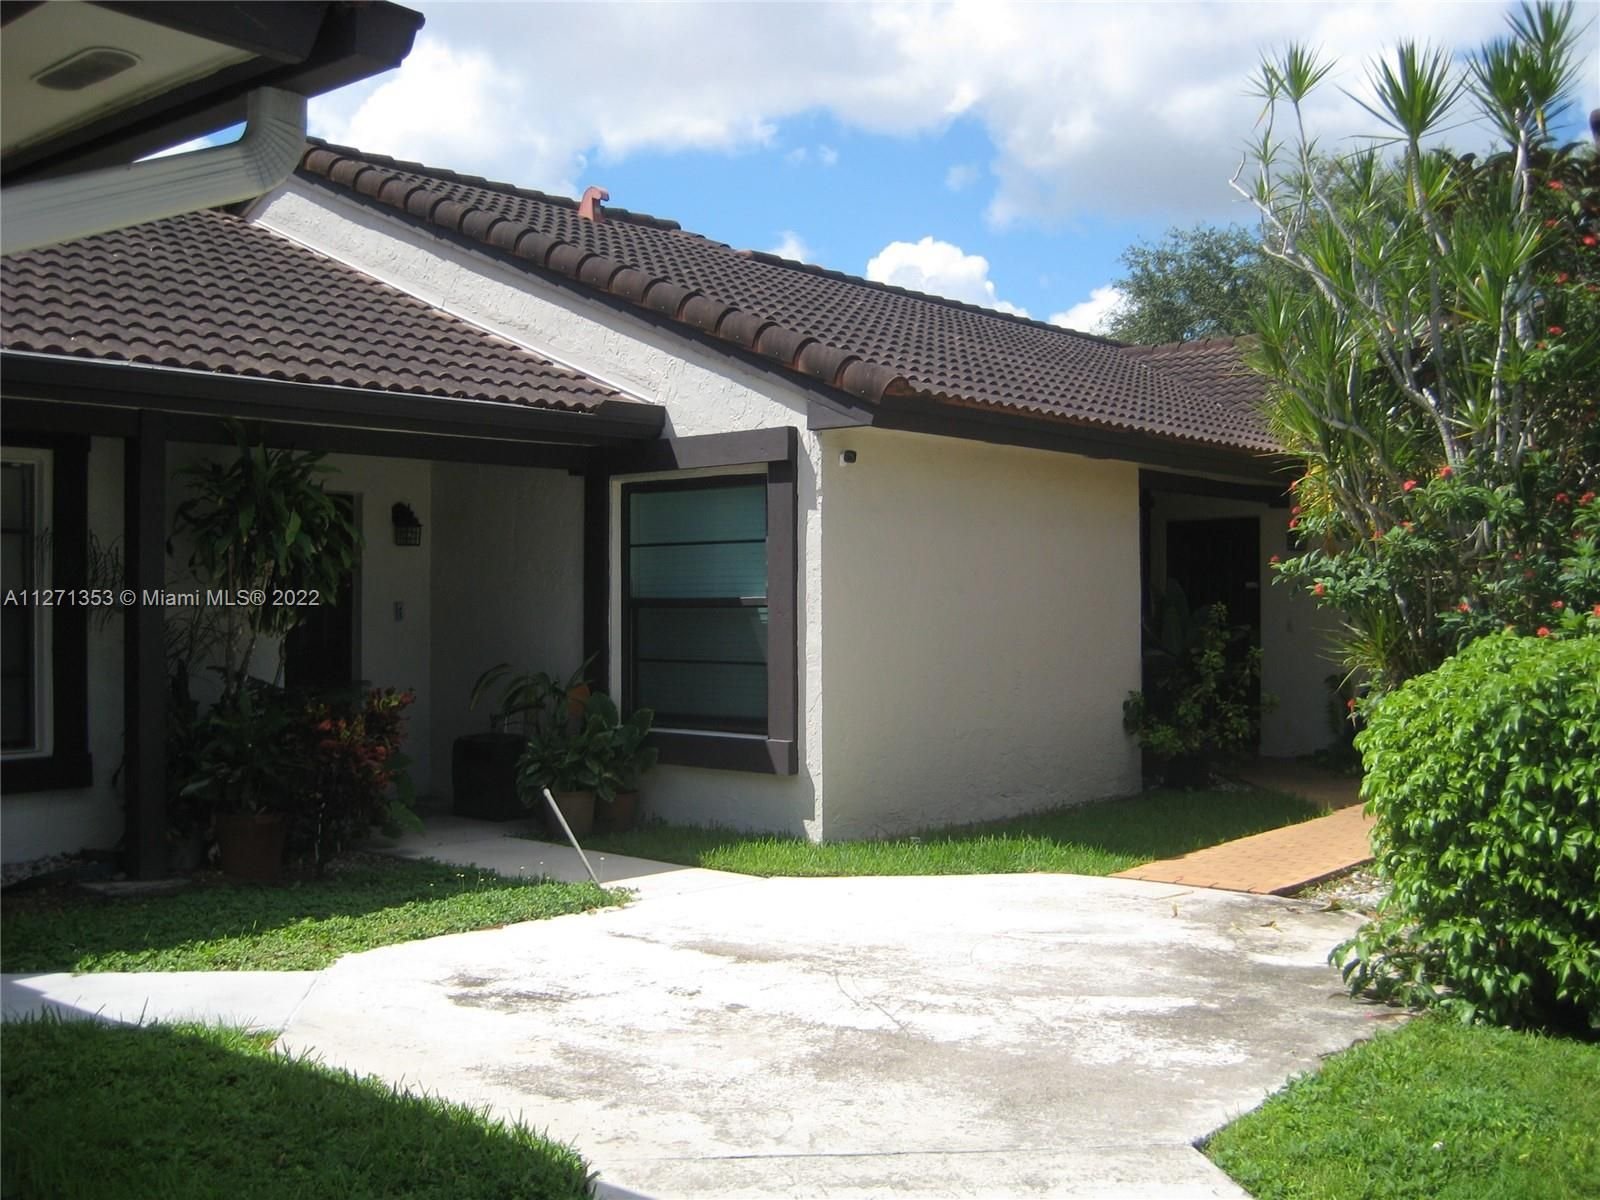 Real estate property located at 4850 149th Ct #15F, Miami-Dade County, Miami, FL